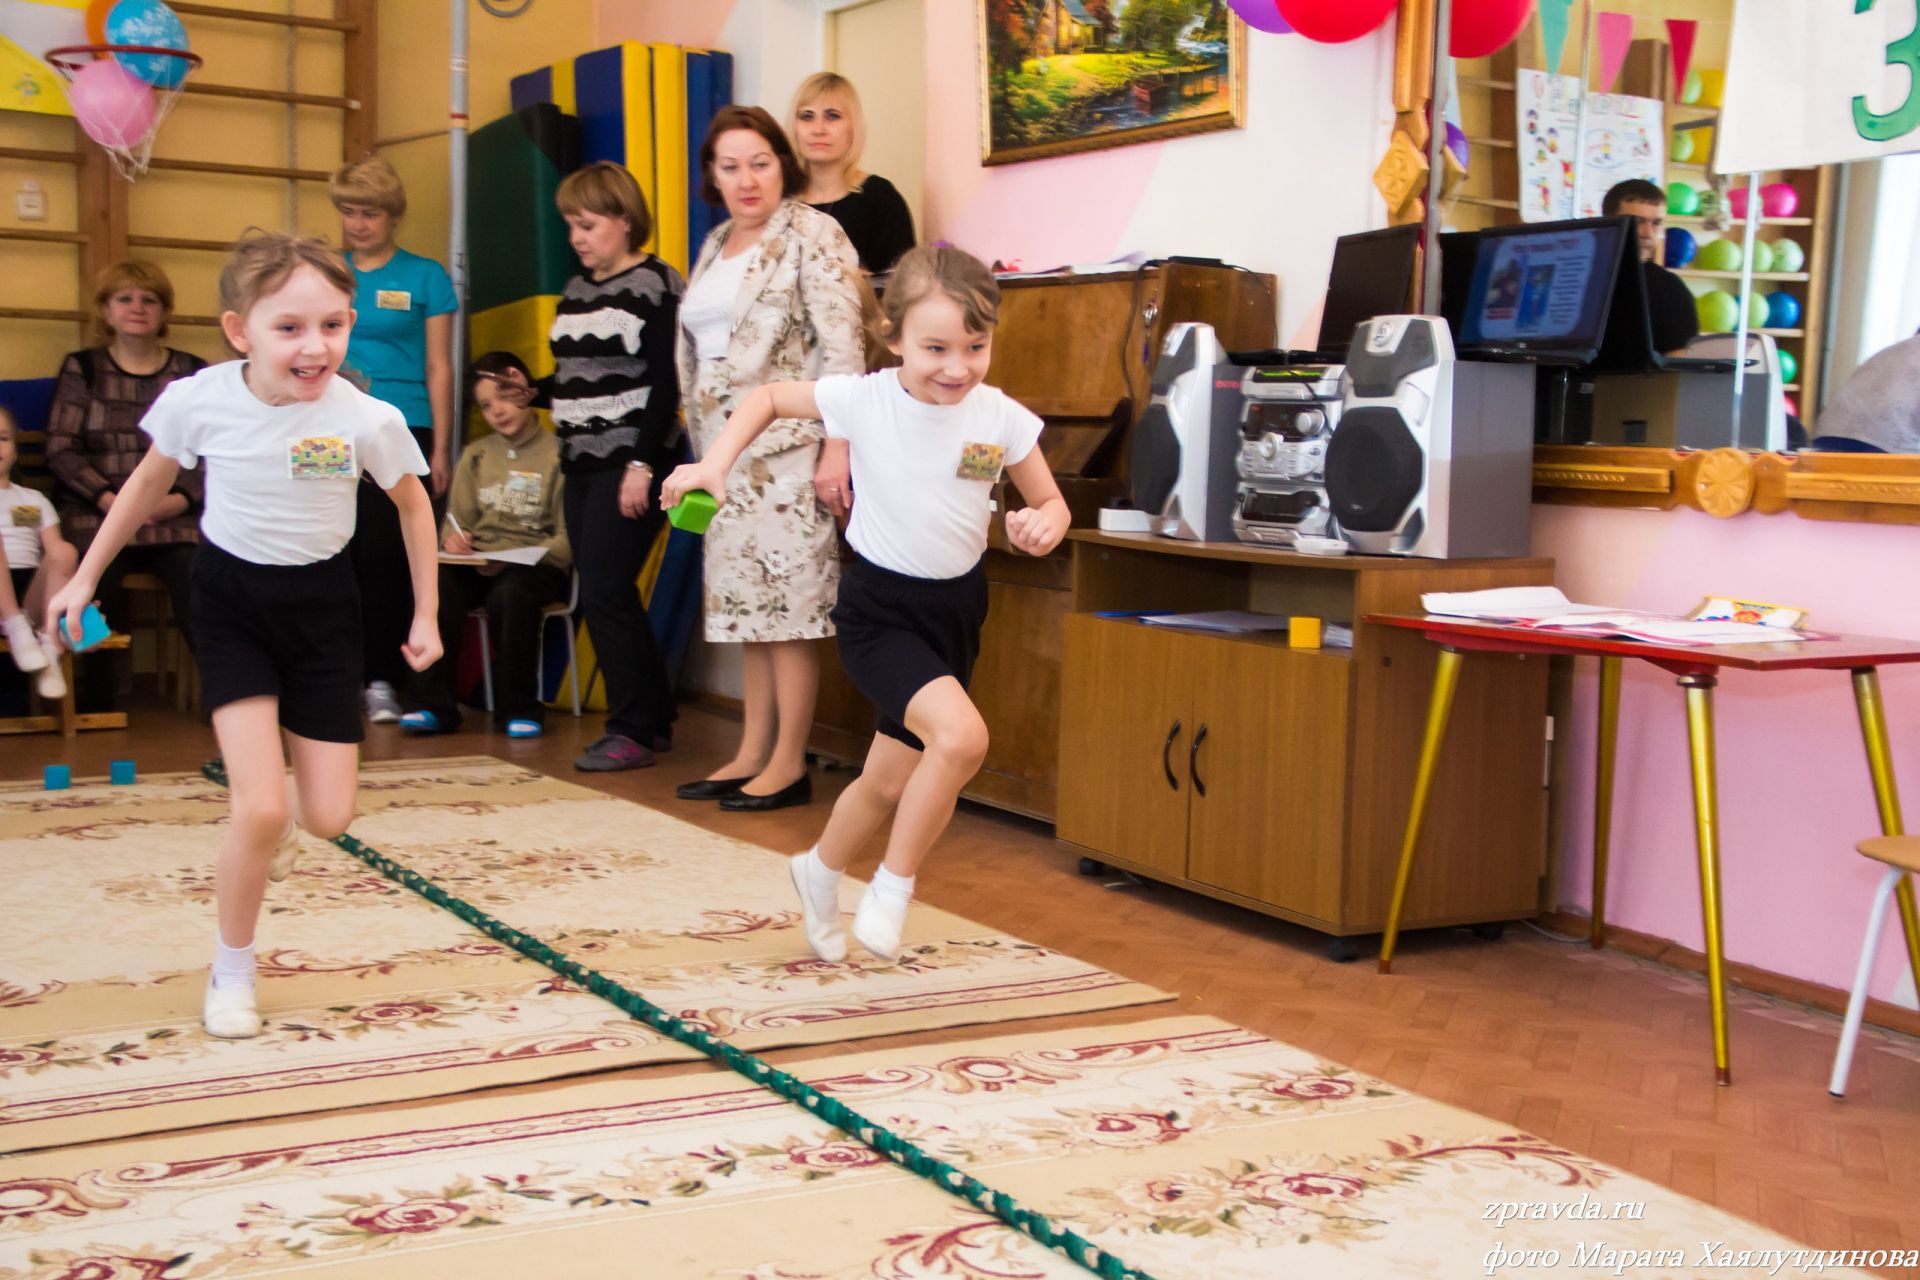 Фоторепортаж: Зеленодольские детсадовцы сдают нормативы ГТО